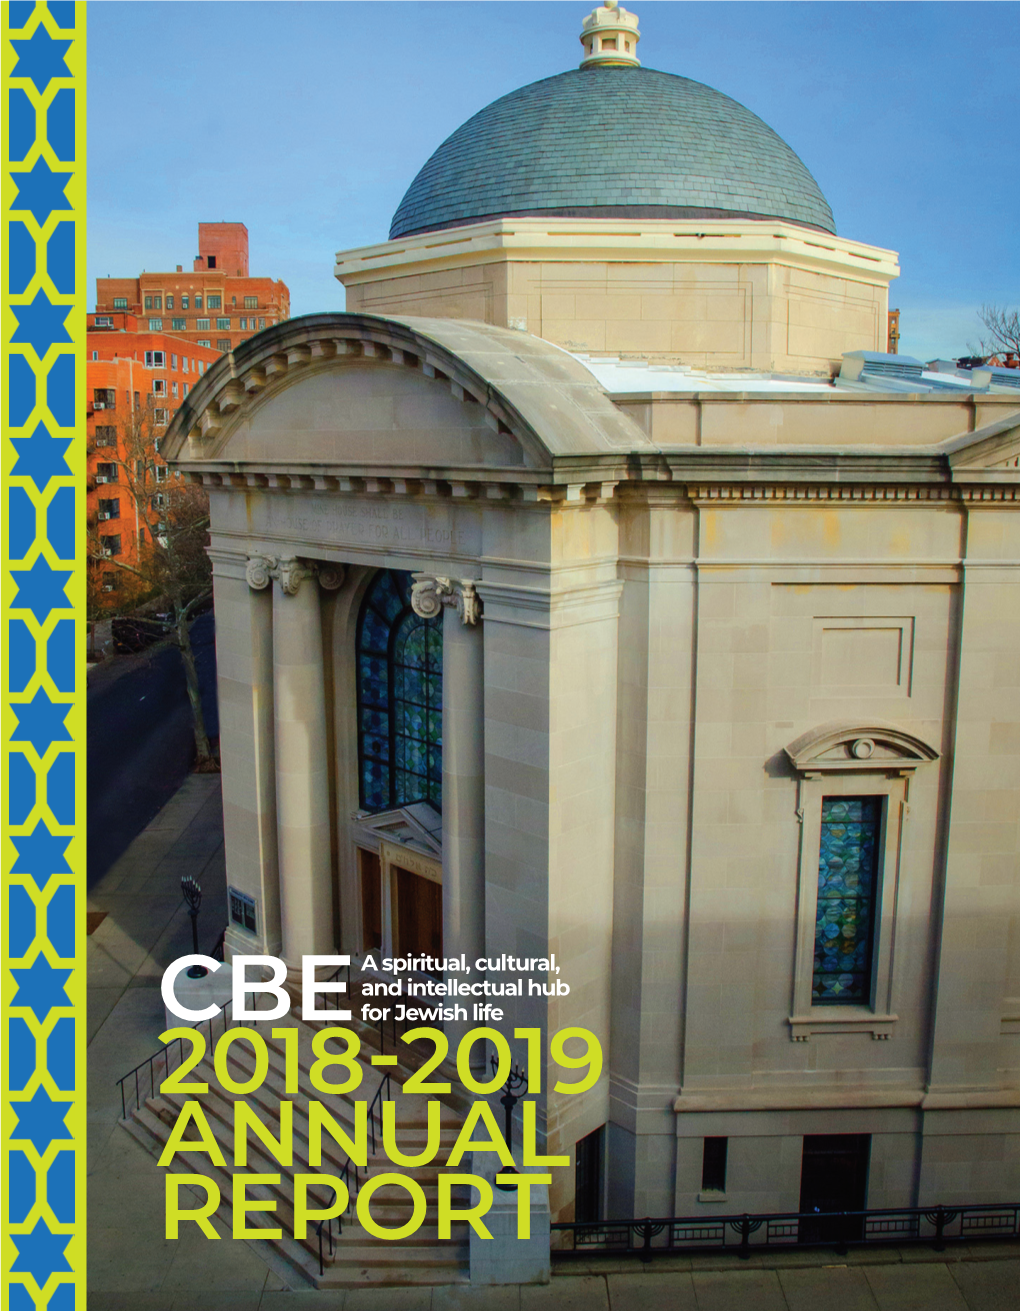 Cbe 2018-2019 Annual Report